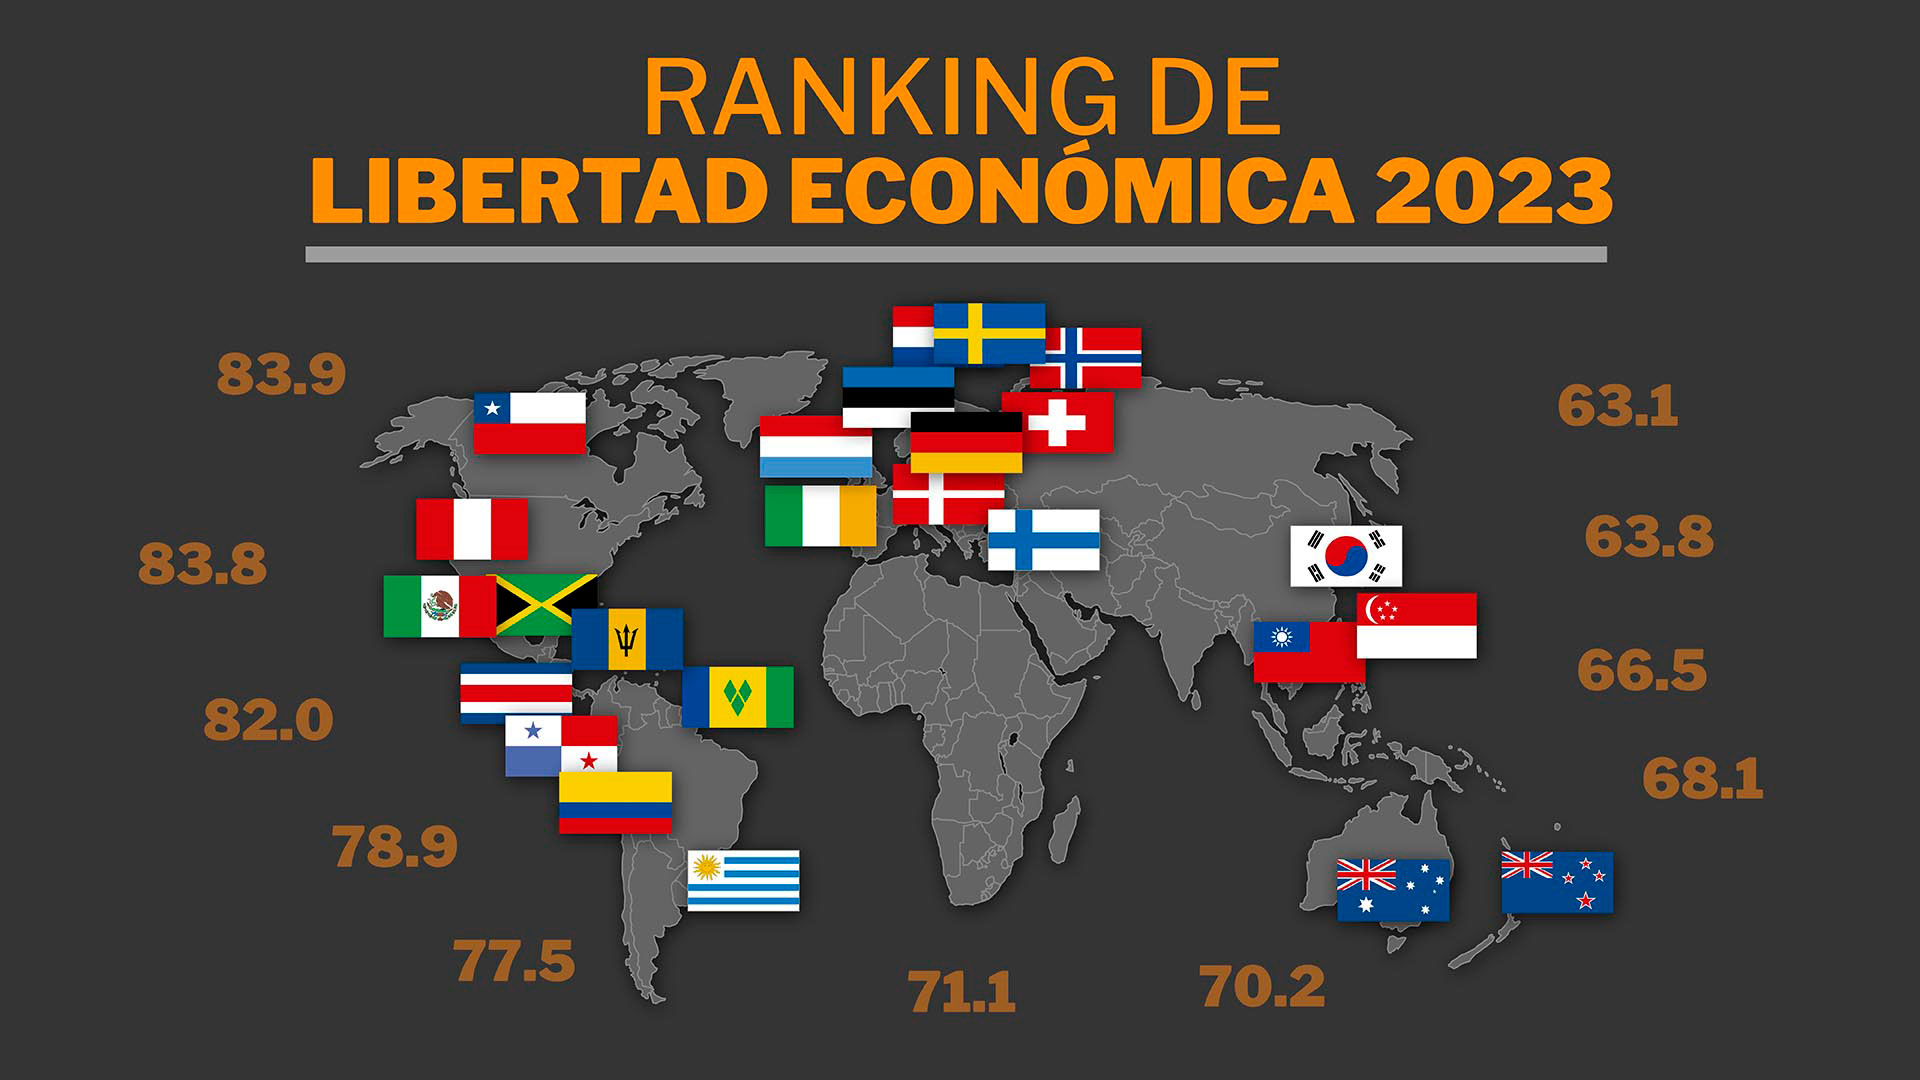 Ranking de libertad económica 2023: las 15 naciones que lideran la lista y dónde se ubican los países de Latinoamérica